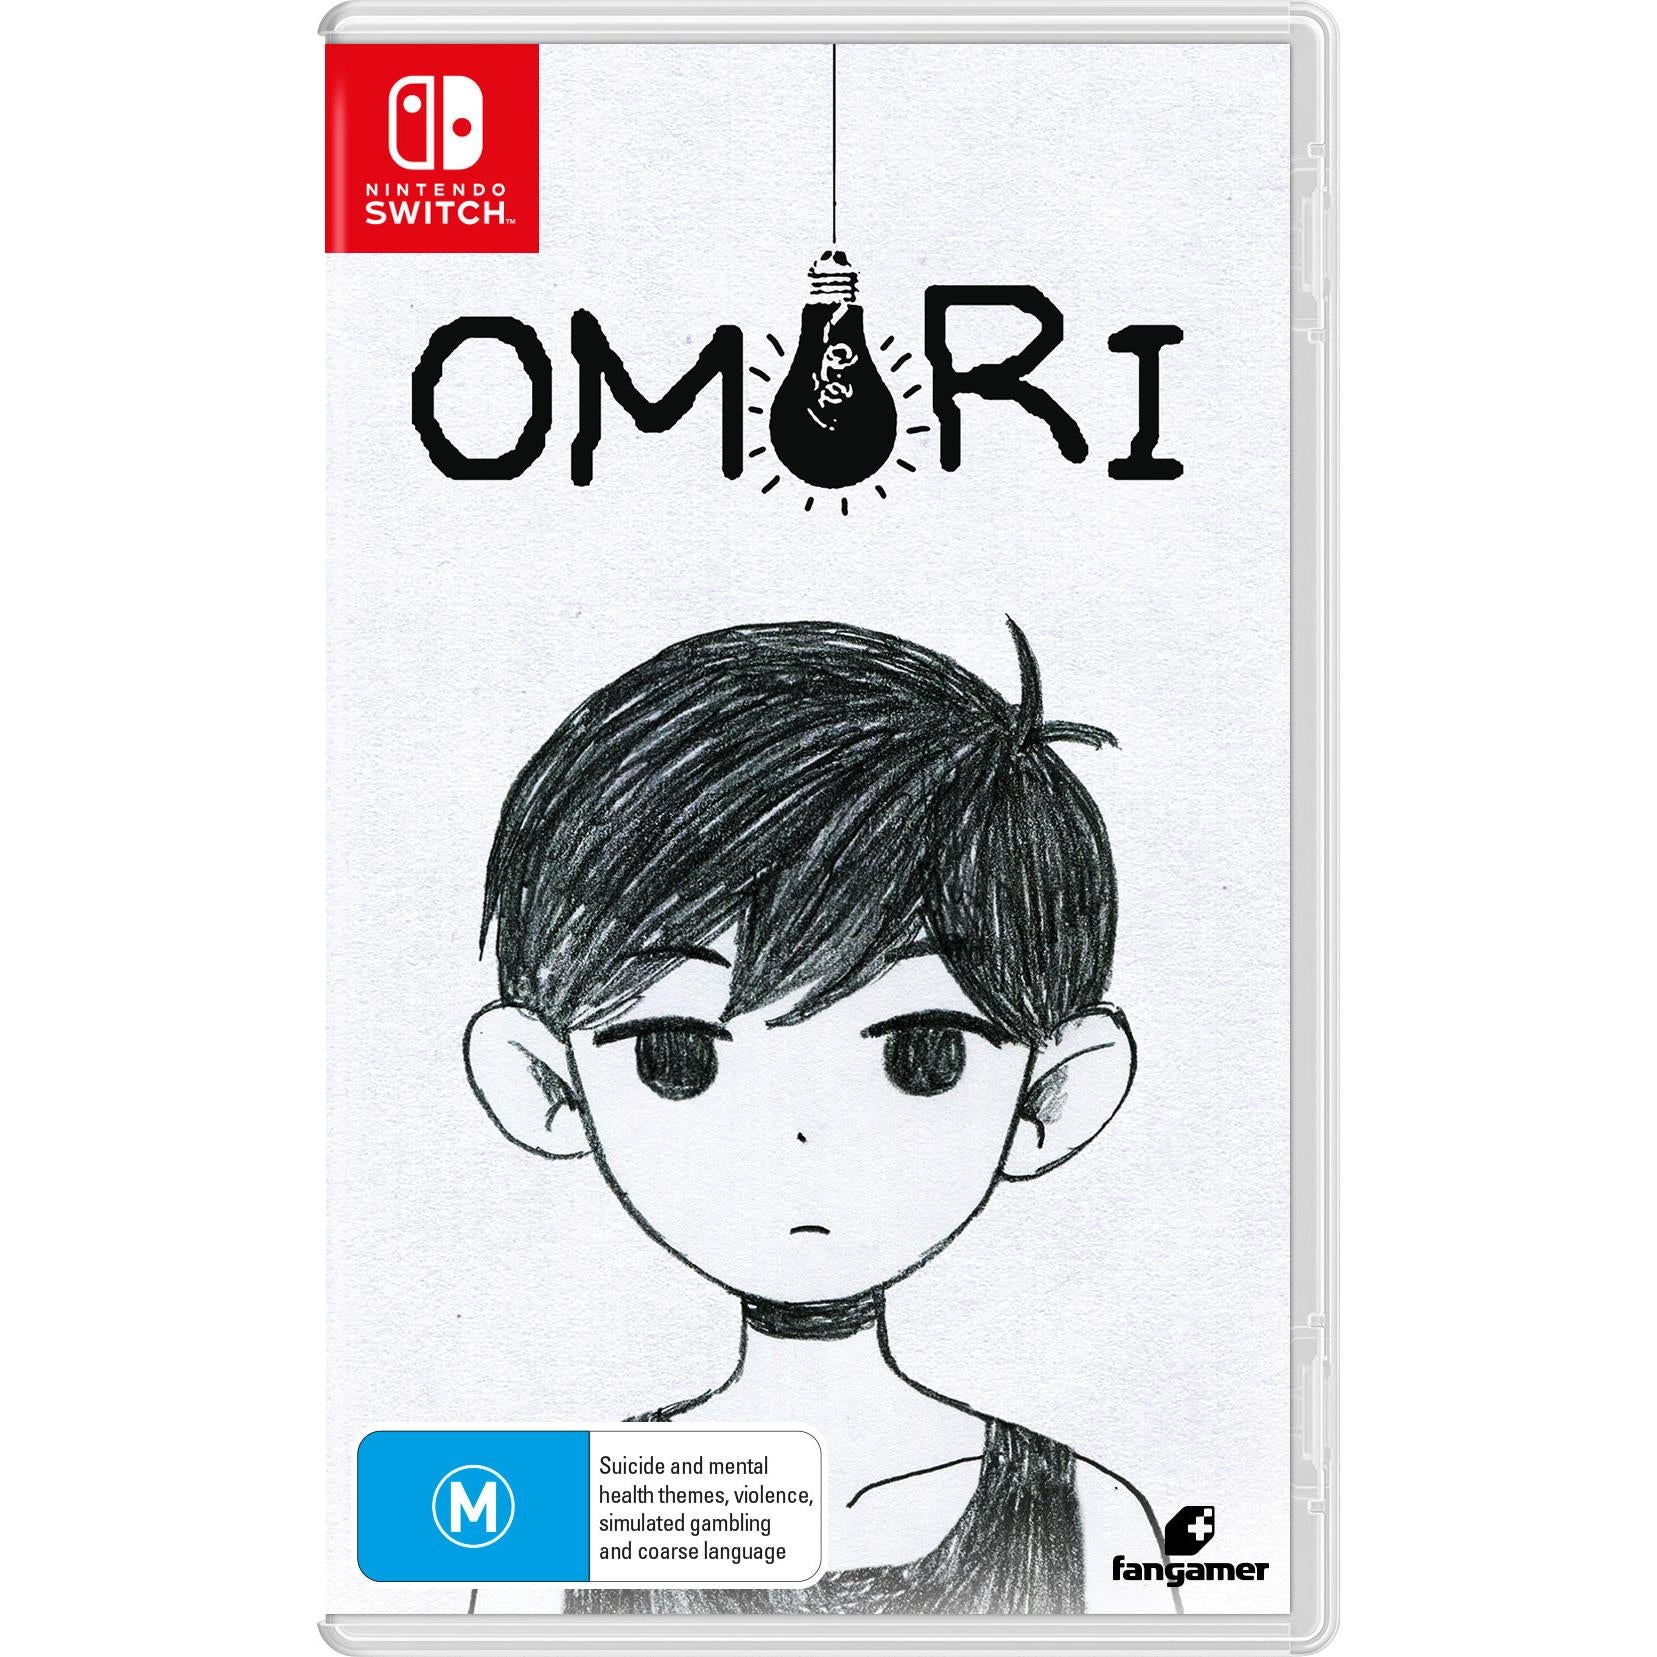 OMORI Original Soundtrack CD (3-disc set) – OMOCAT